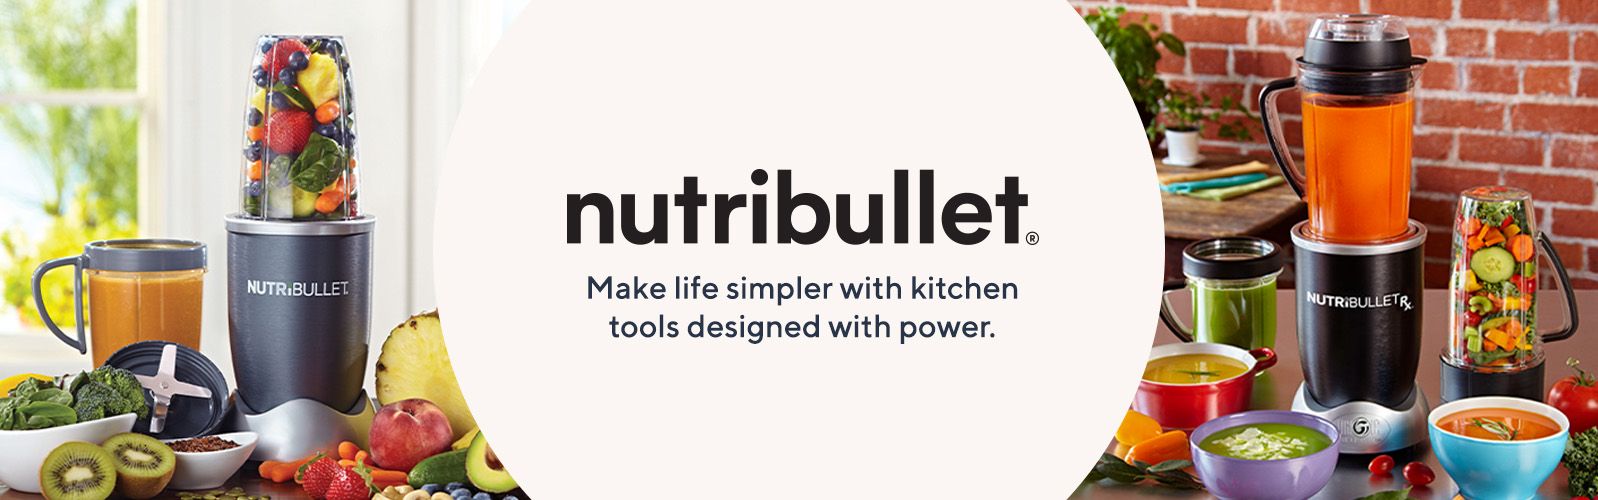 nutribullet Baby & Toddler Meal Prep Kit: Baby Food Storage Accessories -  nutribullet